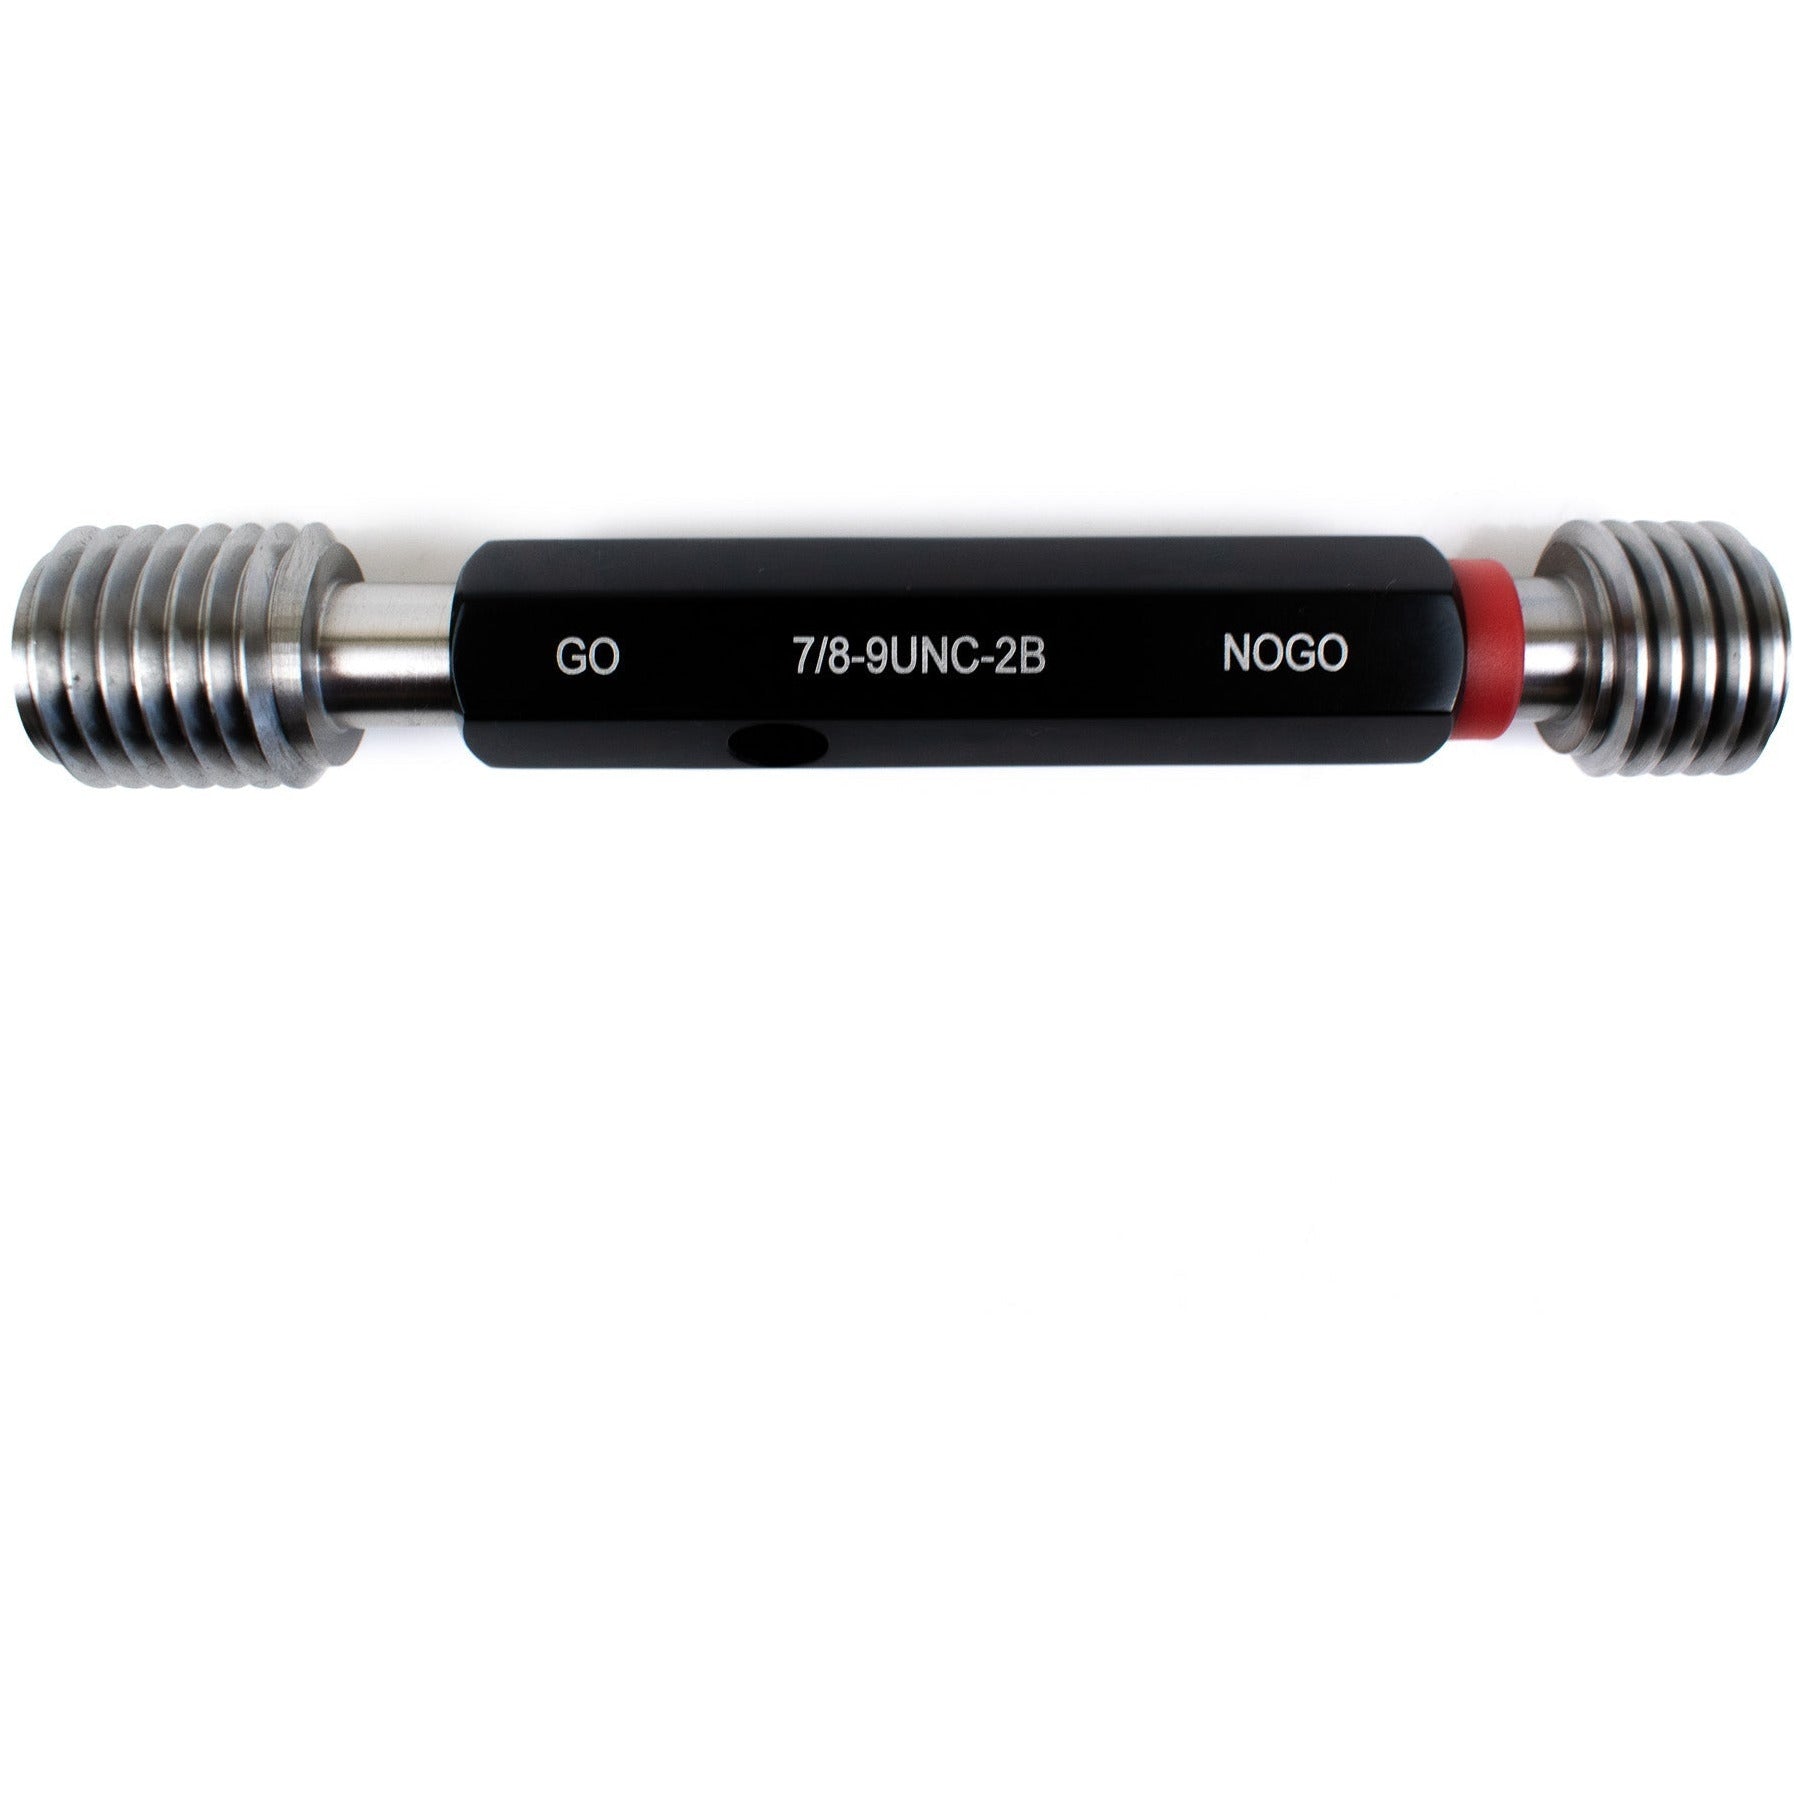 Insize Thread GO NOGO Plug Gauge 7/8"-20 UNC Series 4131-7C1